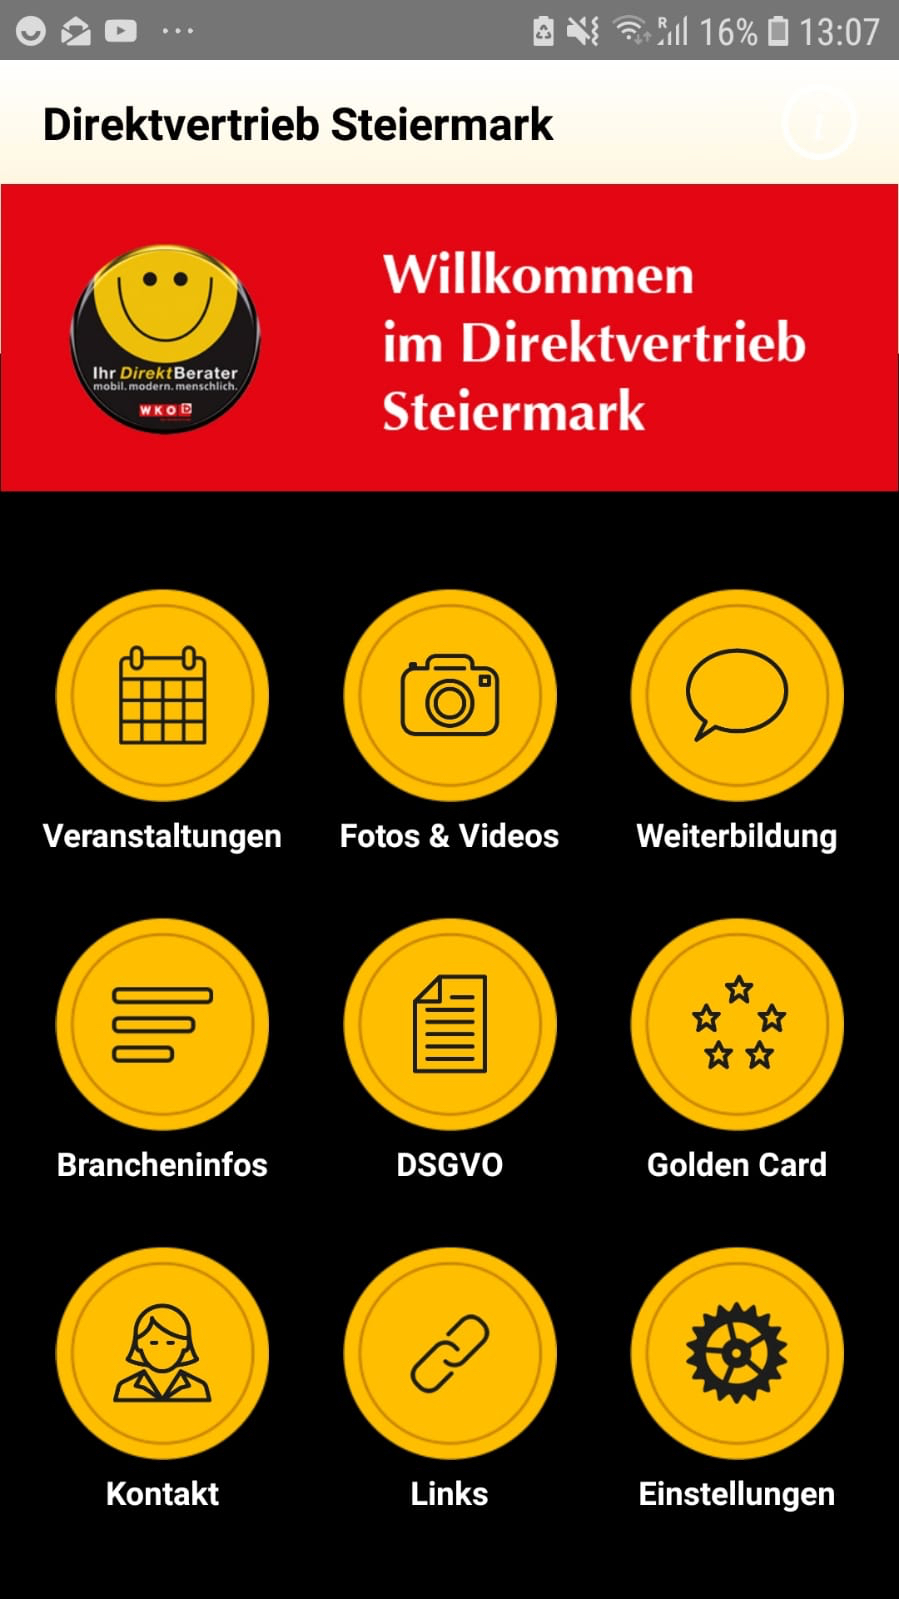 Startseiten-Screenshot der Apps für den Steirischen Direktvertrieb mit orangen Icons zu Veranstaltungen, Foto&Videos, Weiterbildung, Brancheninfos, DSGVO, Golden Card, Kontakt, Links und Einstellungen auf schwarzem Hintergrund. Darüber ist das Logo des Direktvertriebs und der Satz: "Willkommen im Direktvertrieb Steiermark"